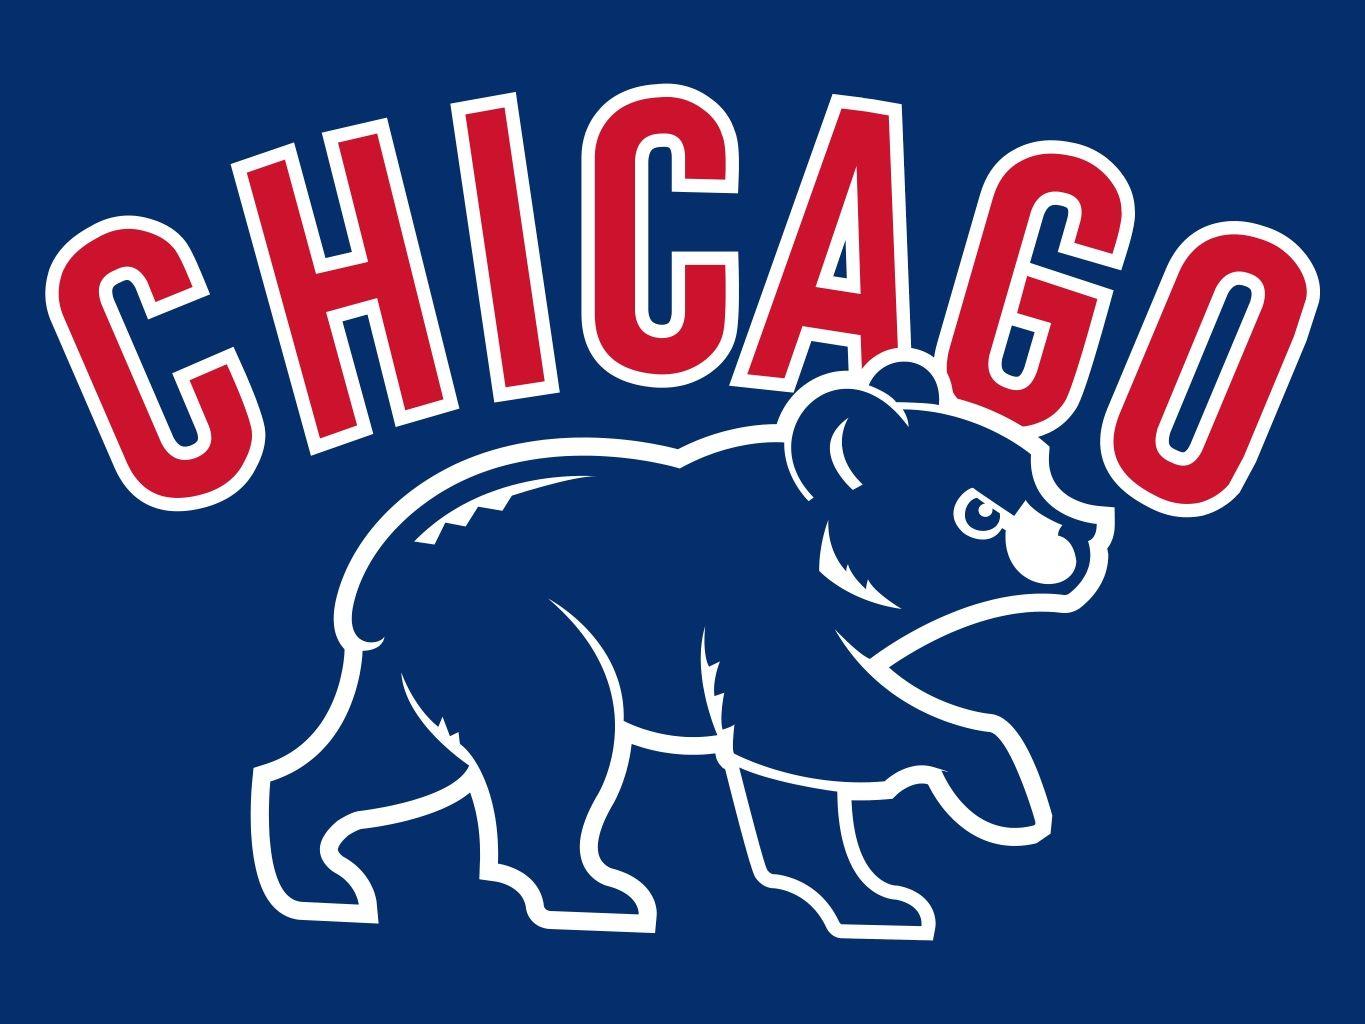 Chicago Cubs (Away Jersey) | Stephen Clark (sgclark.com)